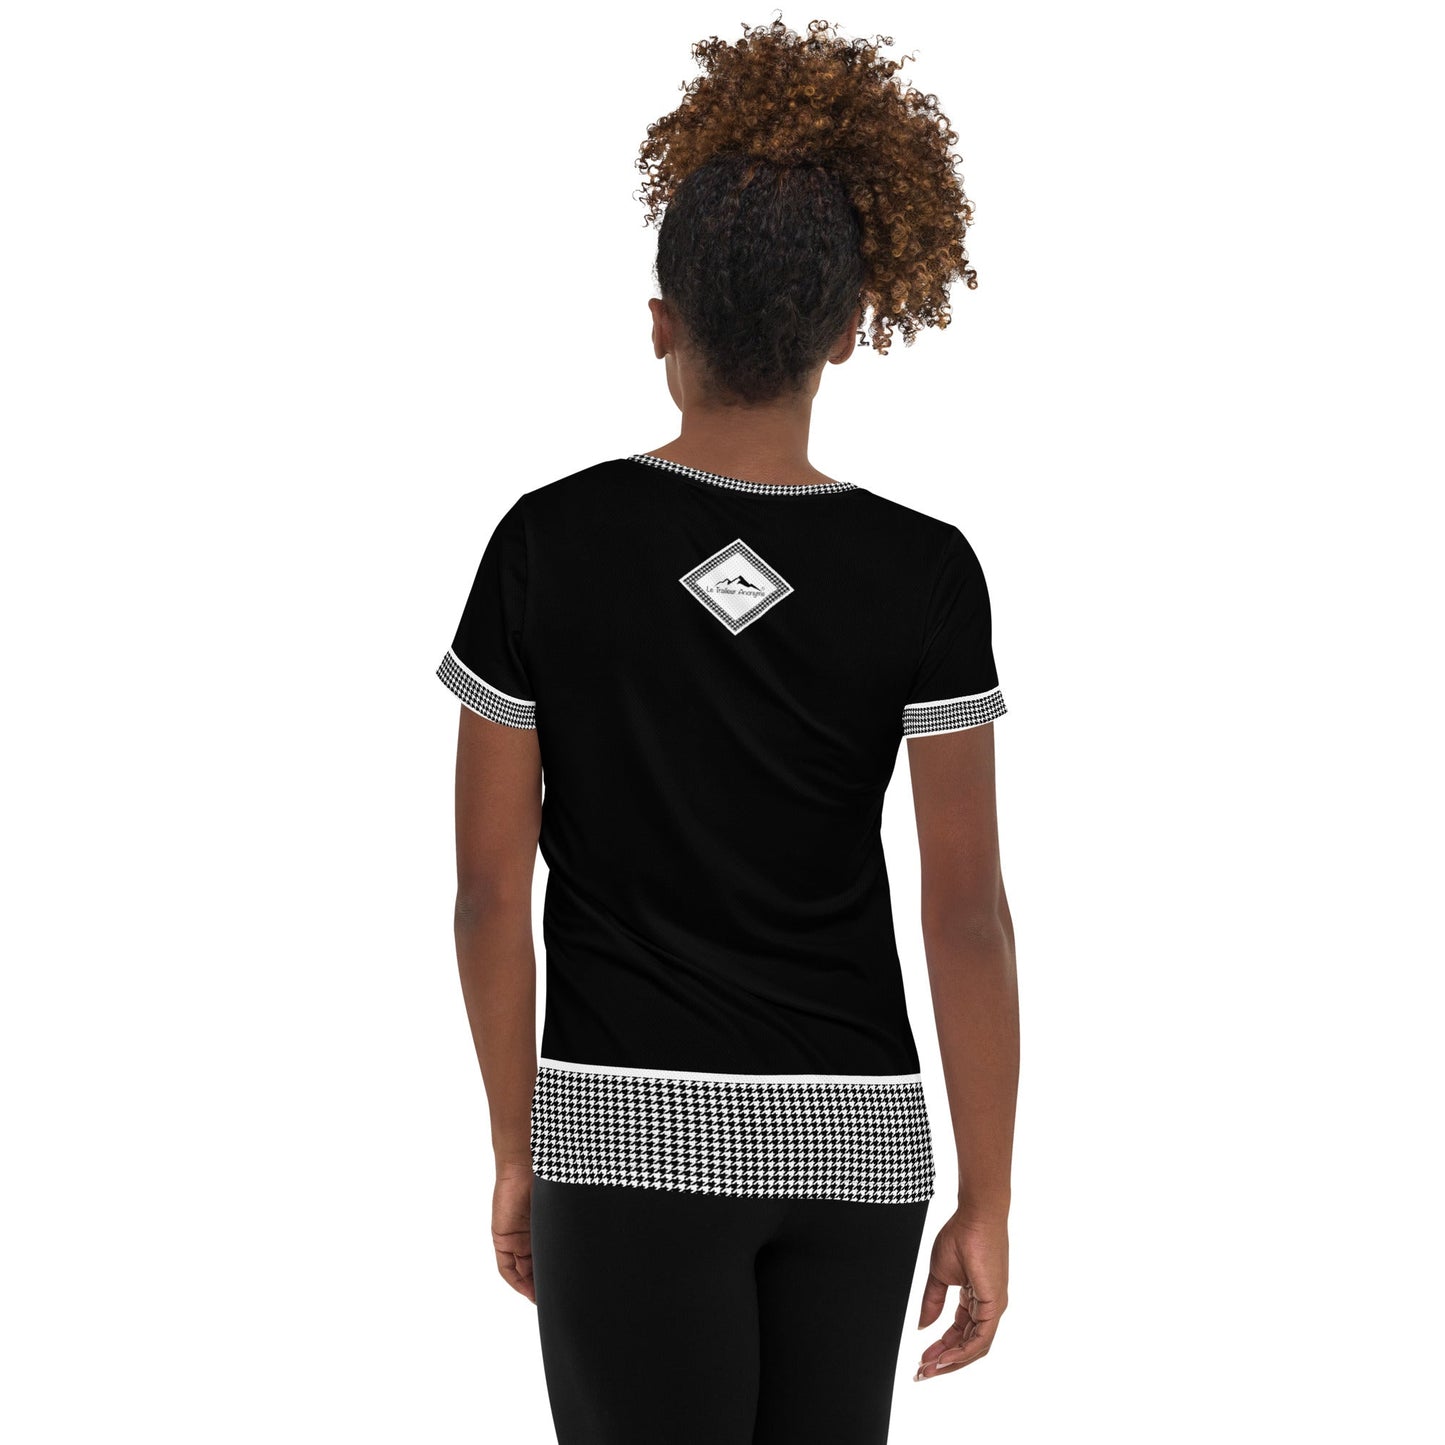 T-Shirt Running - Femme- Les intemporels - Le Traileur Anonyme